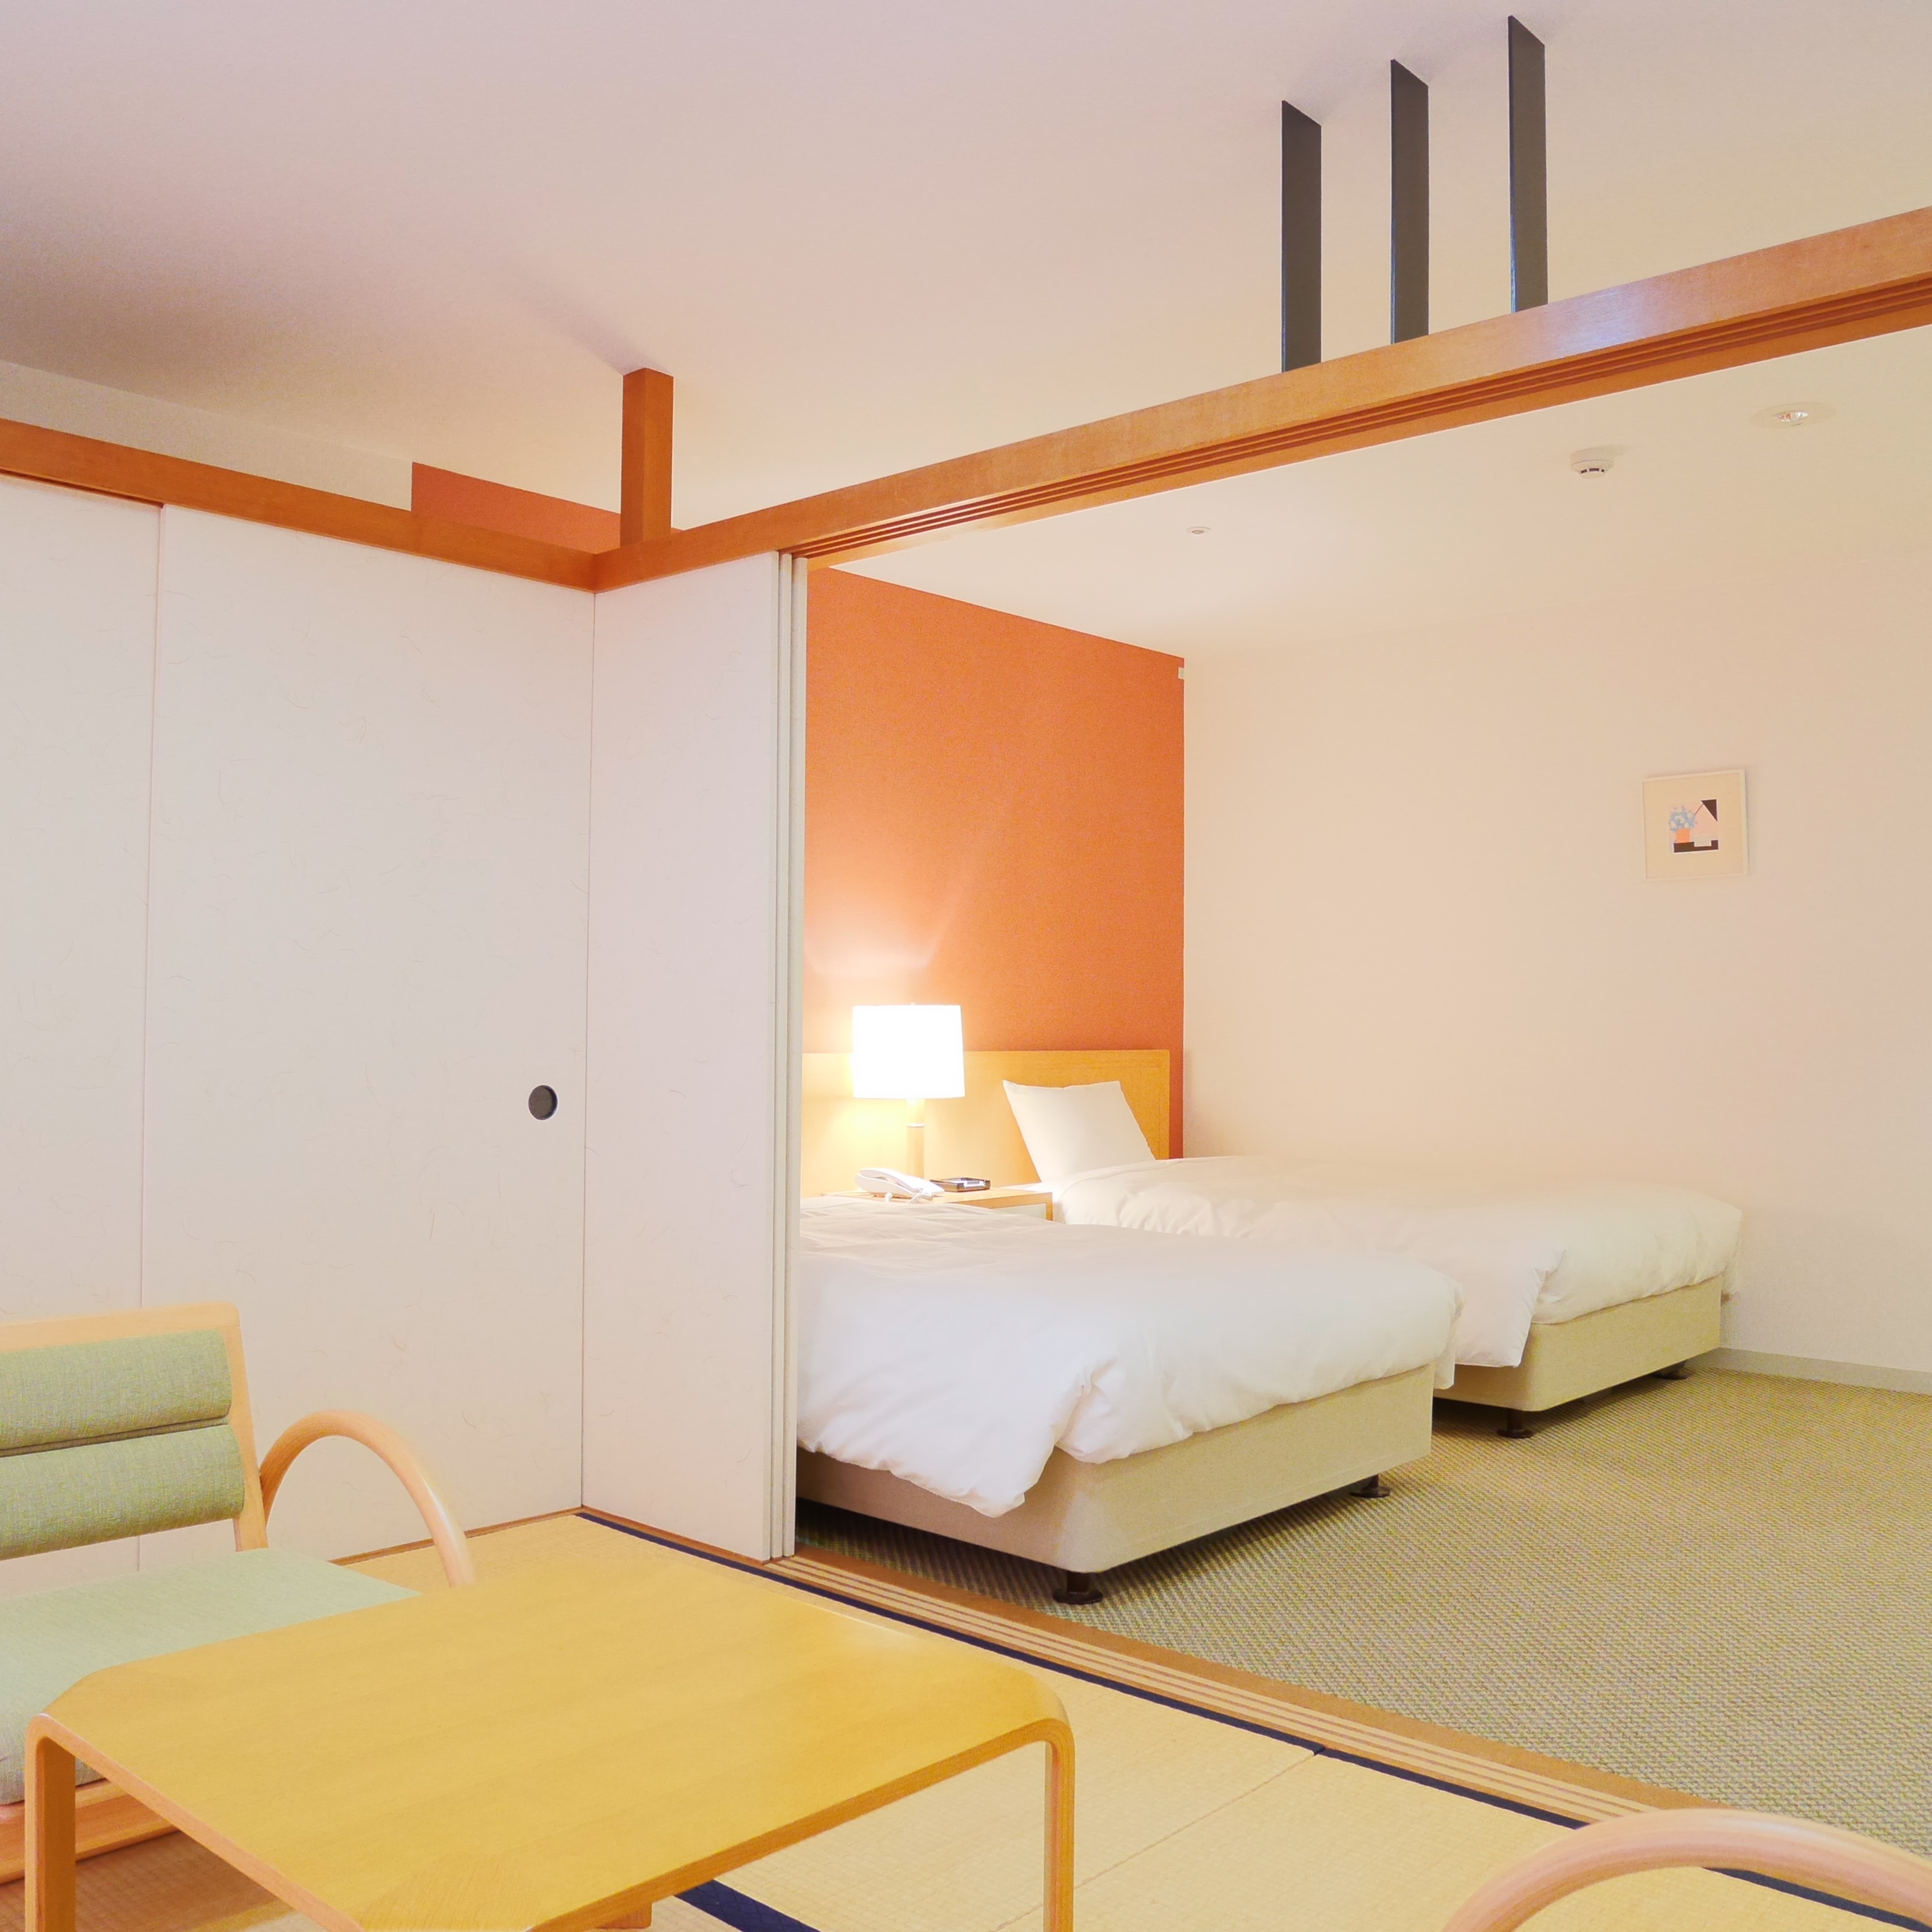 ◆ อาคารใหม่ ห้องญี่ปุ่นและตะวันตก พักได้ 4 ท่าน & lt; พร้อมอ่างอาบน้ำและห้องส้วม & gt;